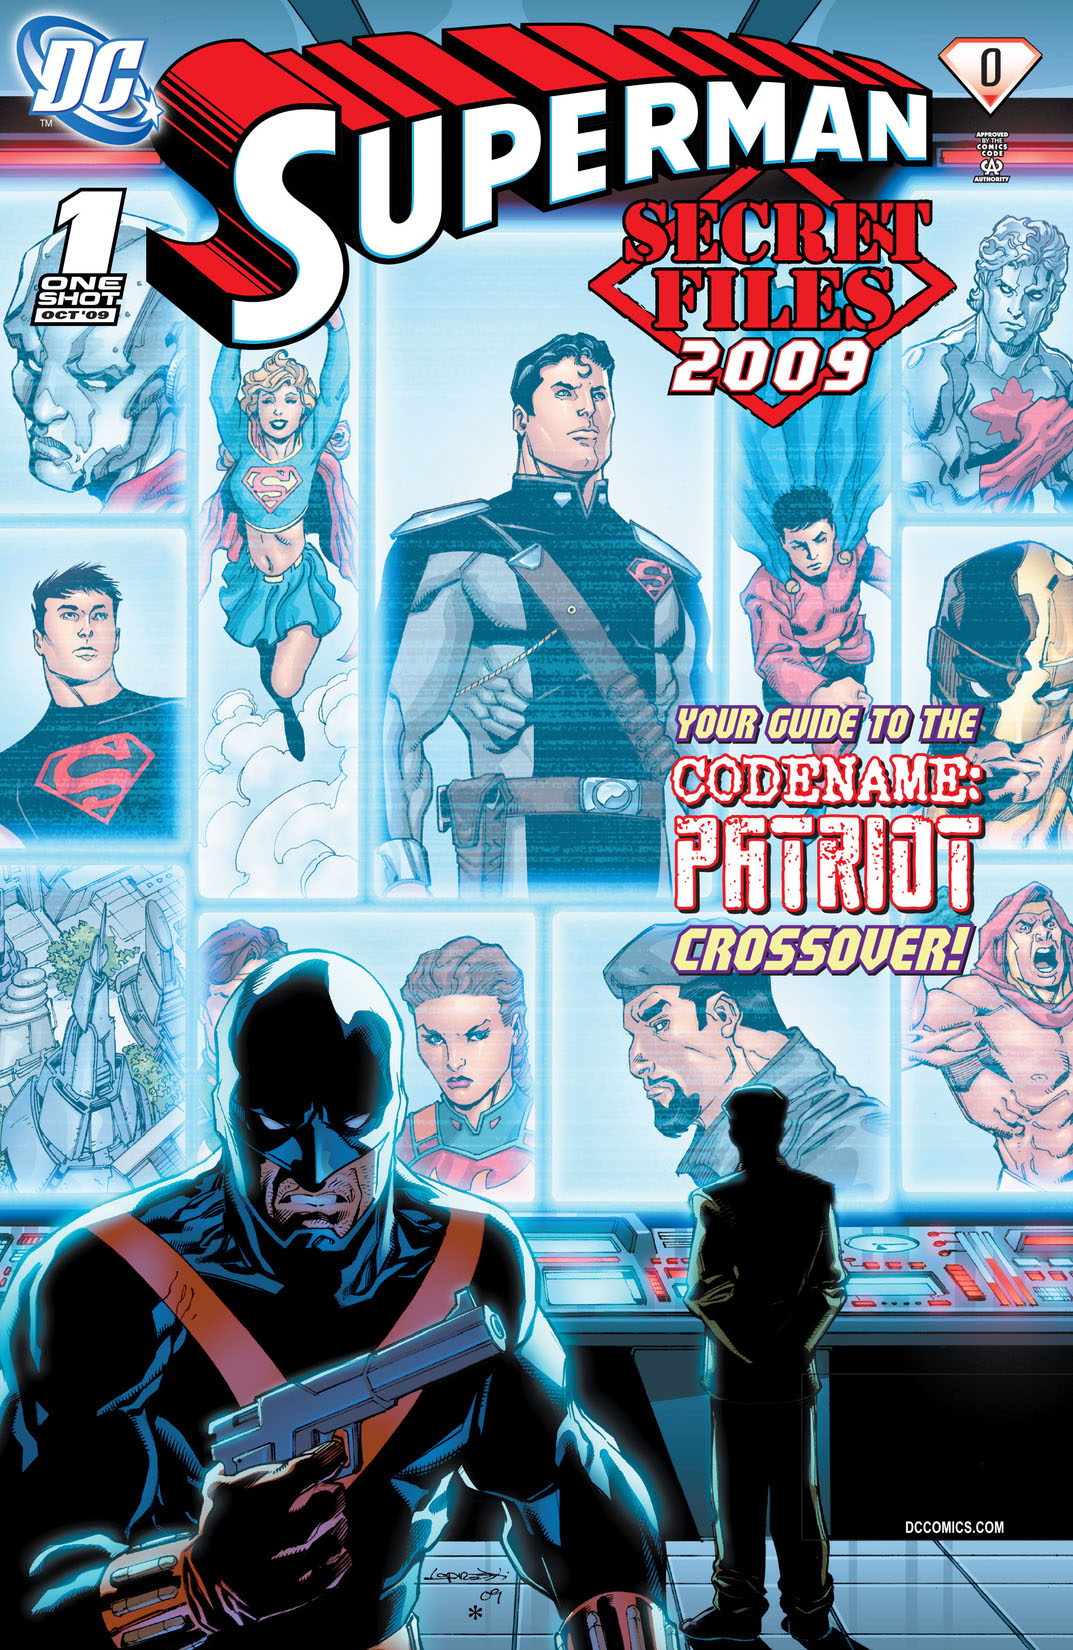 Superman: Secret Files 2009 #1 preview images